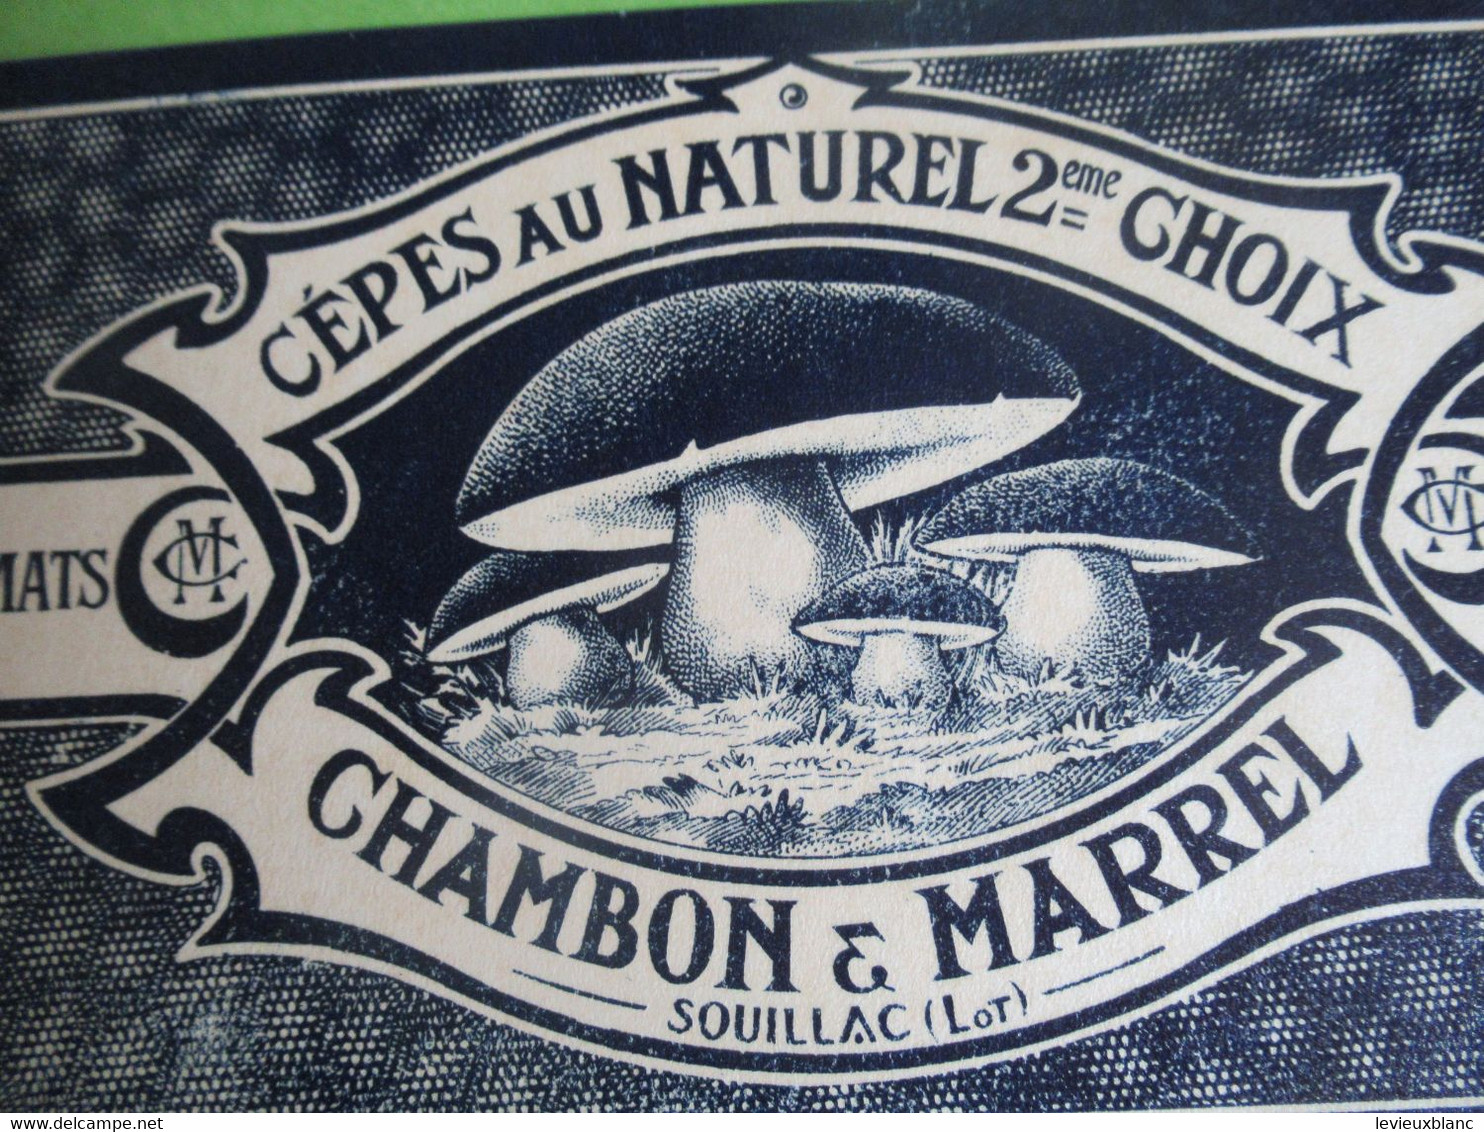 Etiquette Conserve/Cèpes Au Naturel 2éme Choix/CHAMBON & MARREL/SOUILLAC ( Lot ) /début XX                  ETIQ181 - Obst Und Gemüse